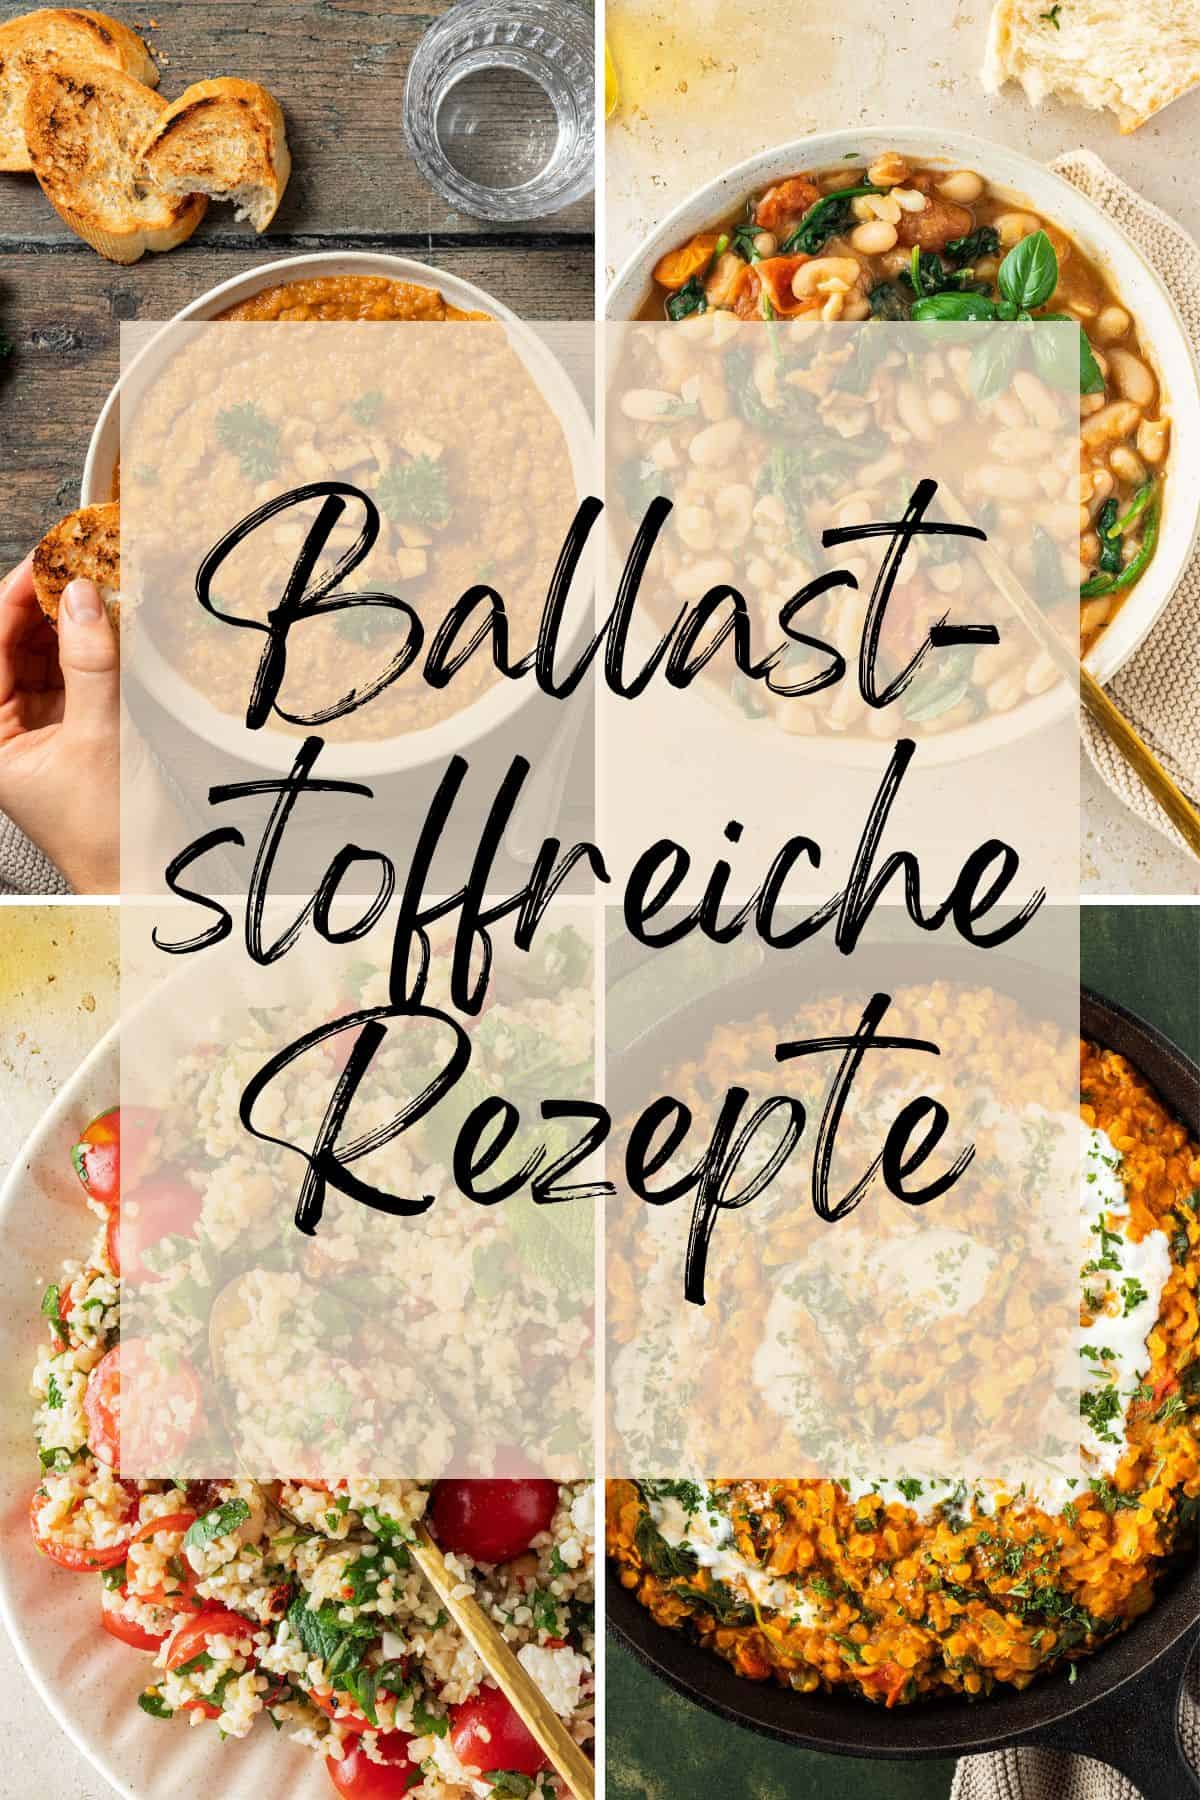 Collage aus vier Bildern mit unterschiedlichen Gerichten, darüber der Textzug "ballaststoffreiche Rezepte".